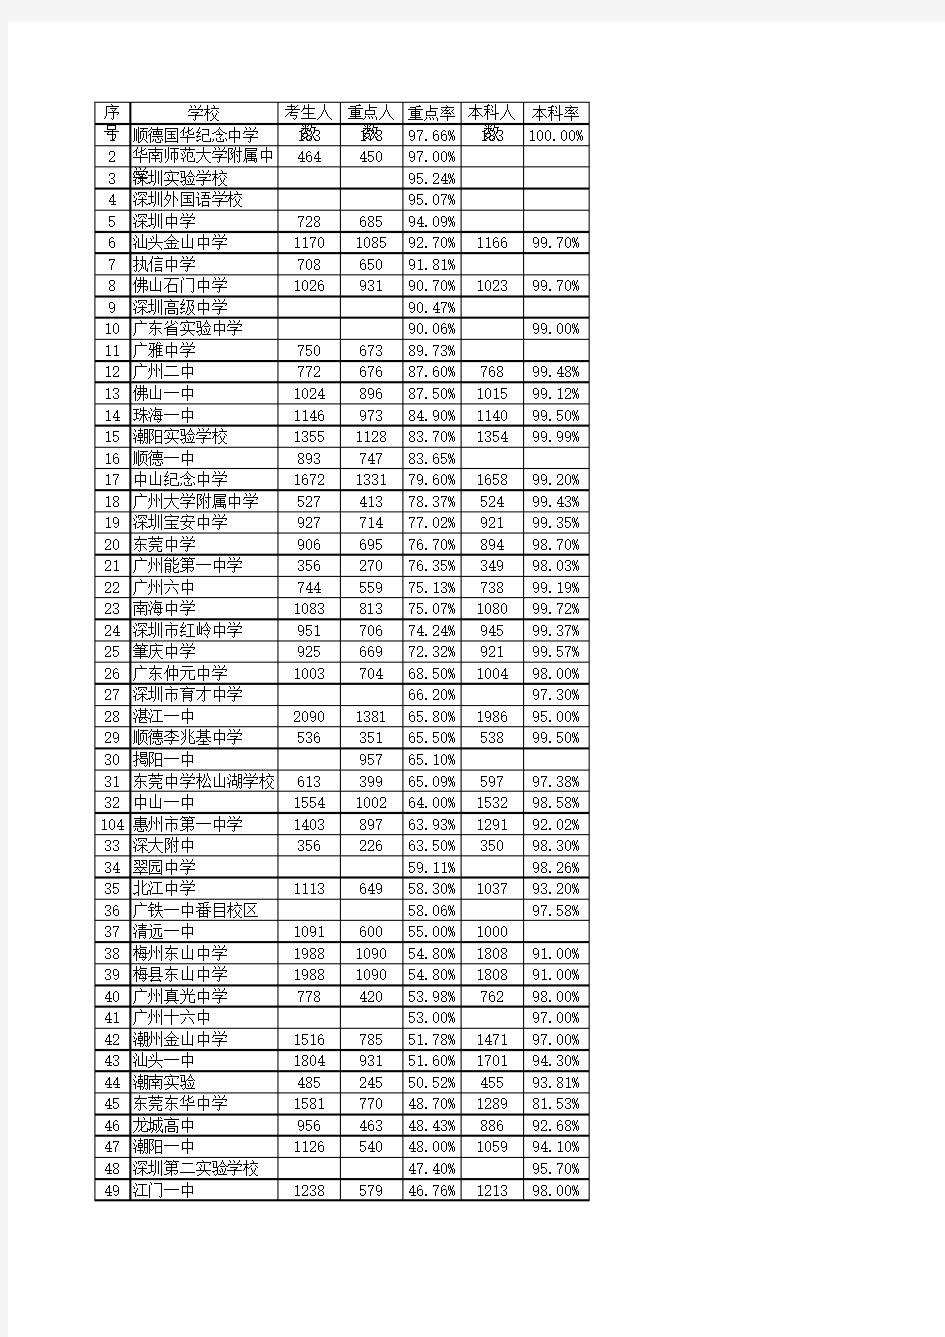 2016广东中学高考重点本科上线情况汇总